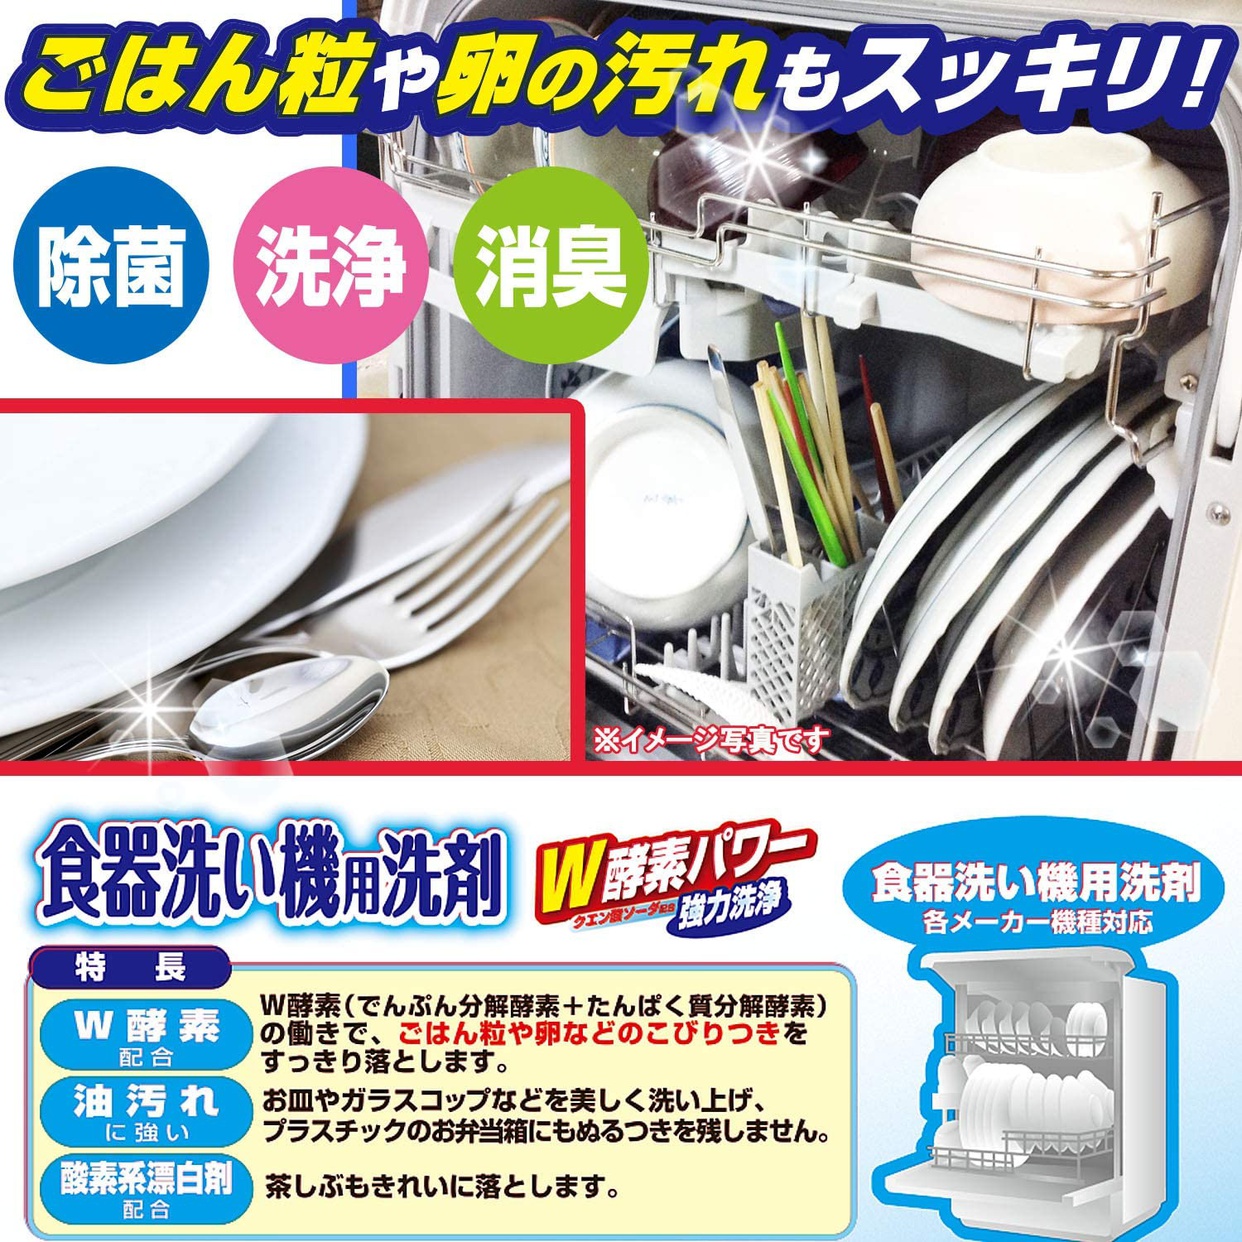 ライオンケミカル ピクス 食器洗い機用洗剤の商品画像4 